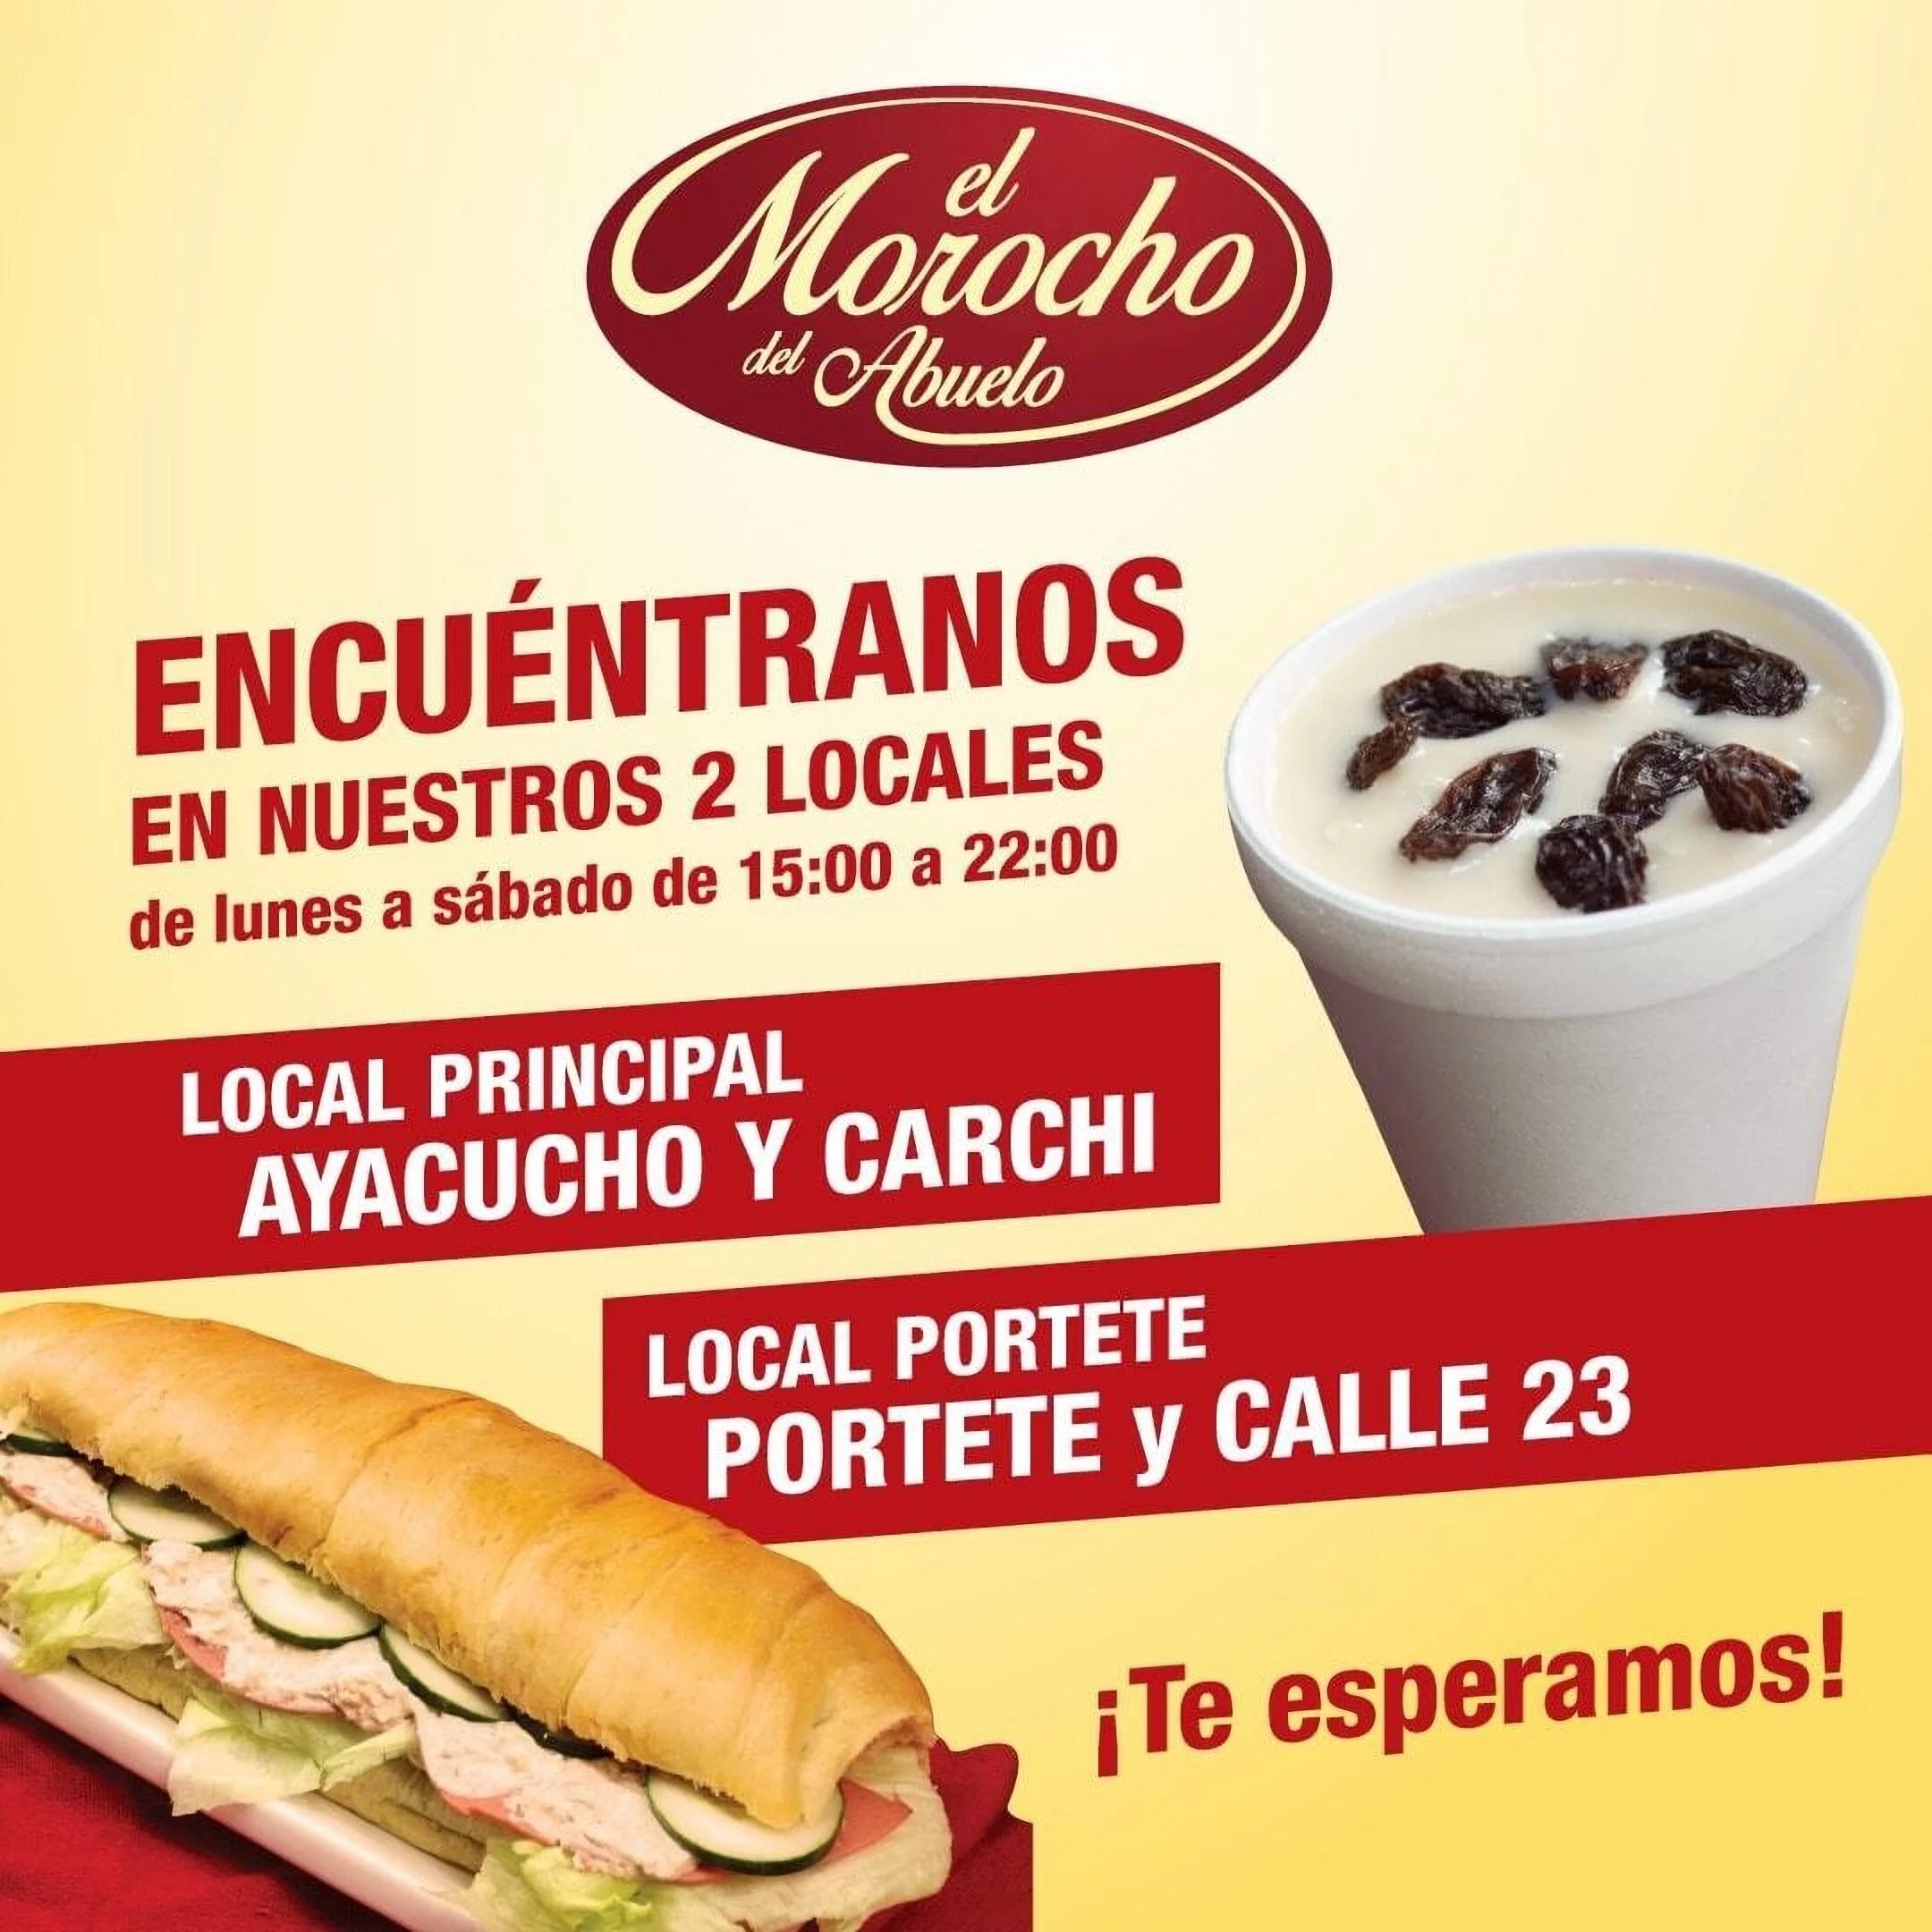 Restaurantes-el-morocho-del-abuelo-17147